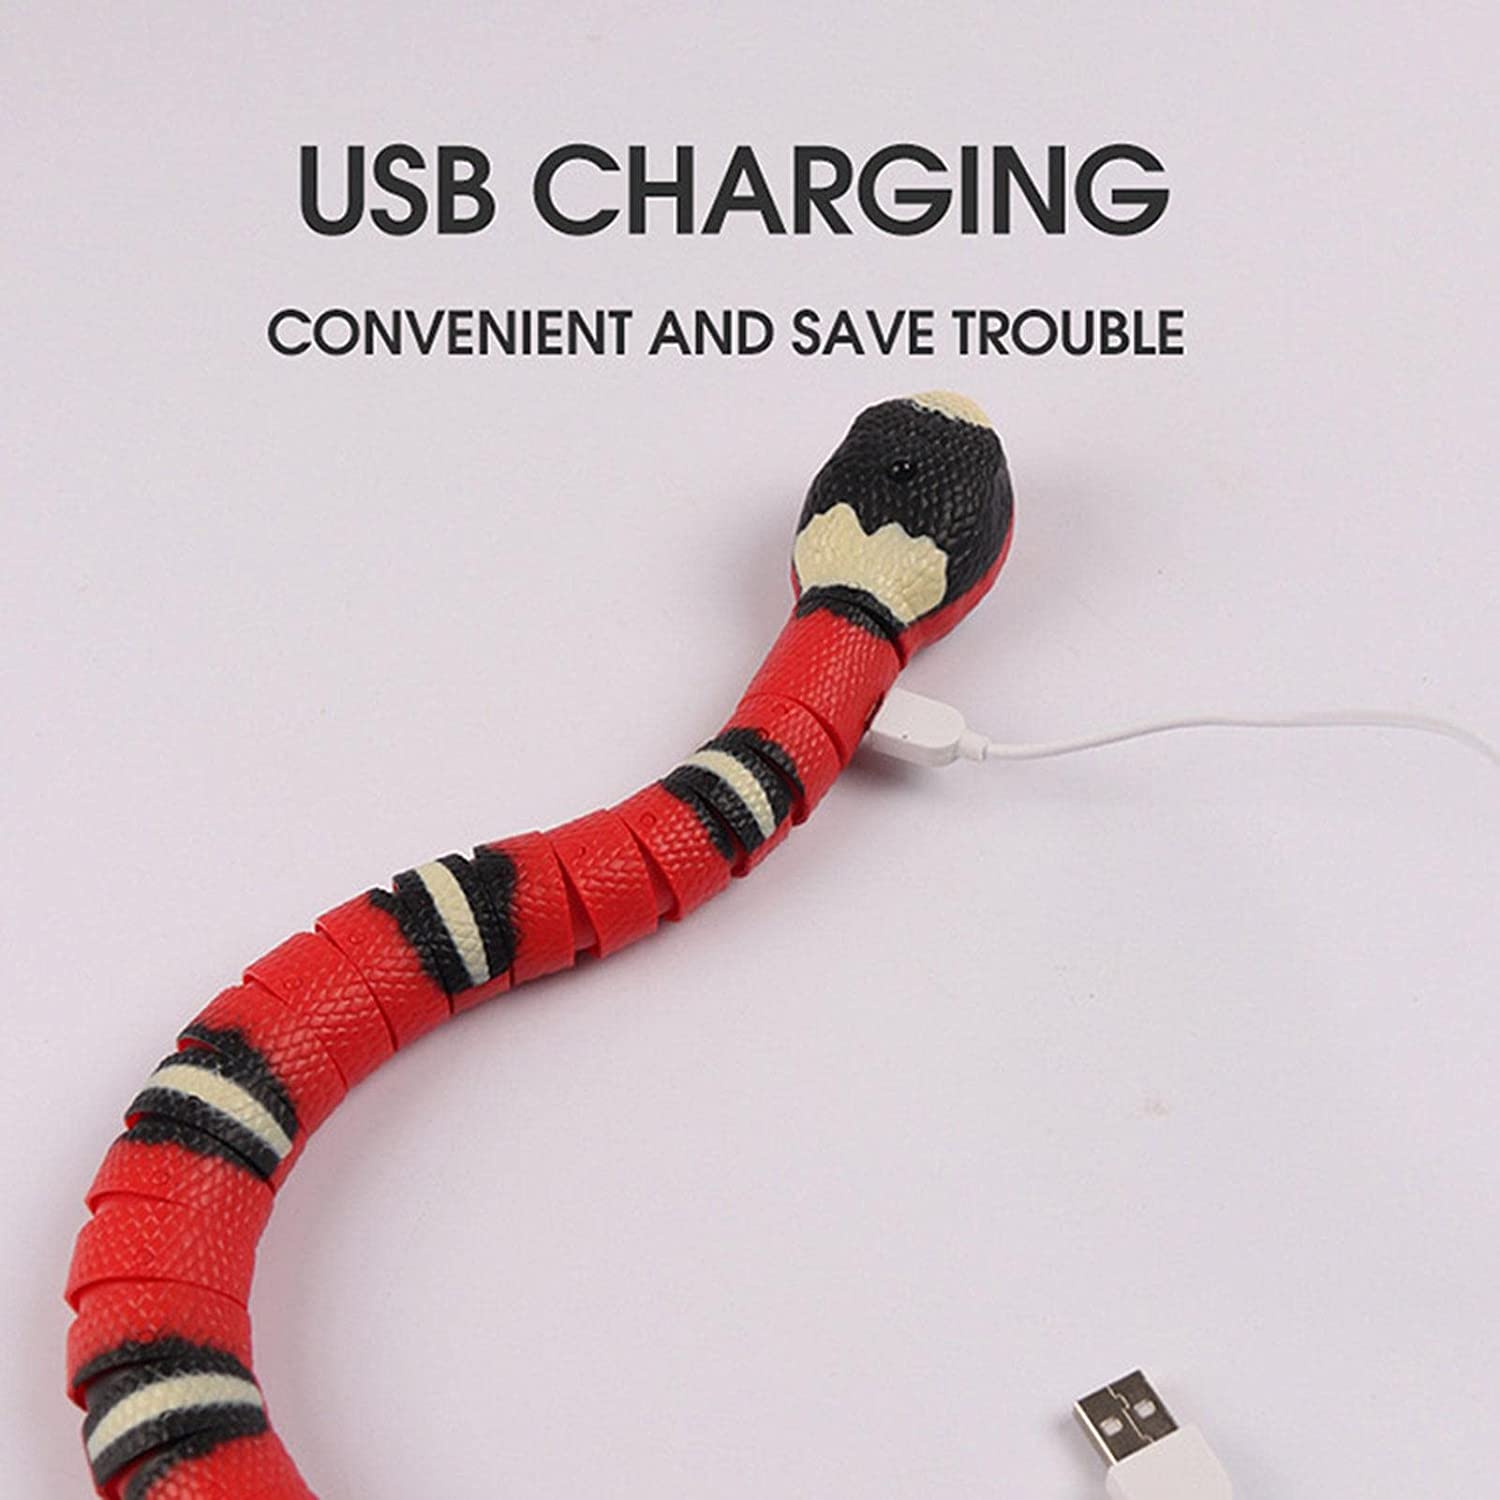 Creative Smart Sensing Snake Cat Toy